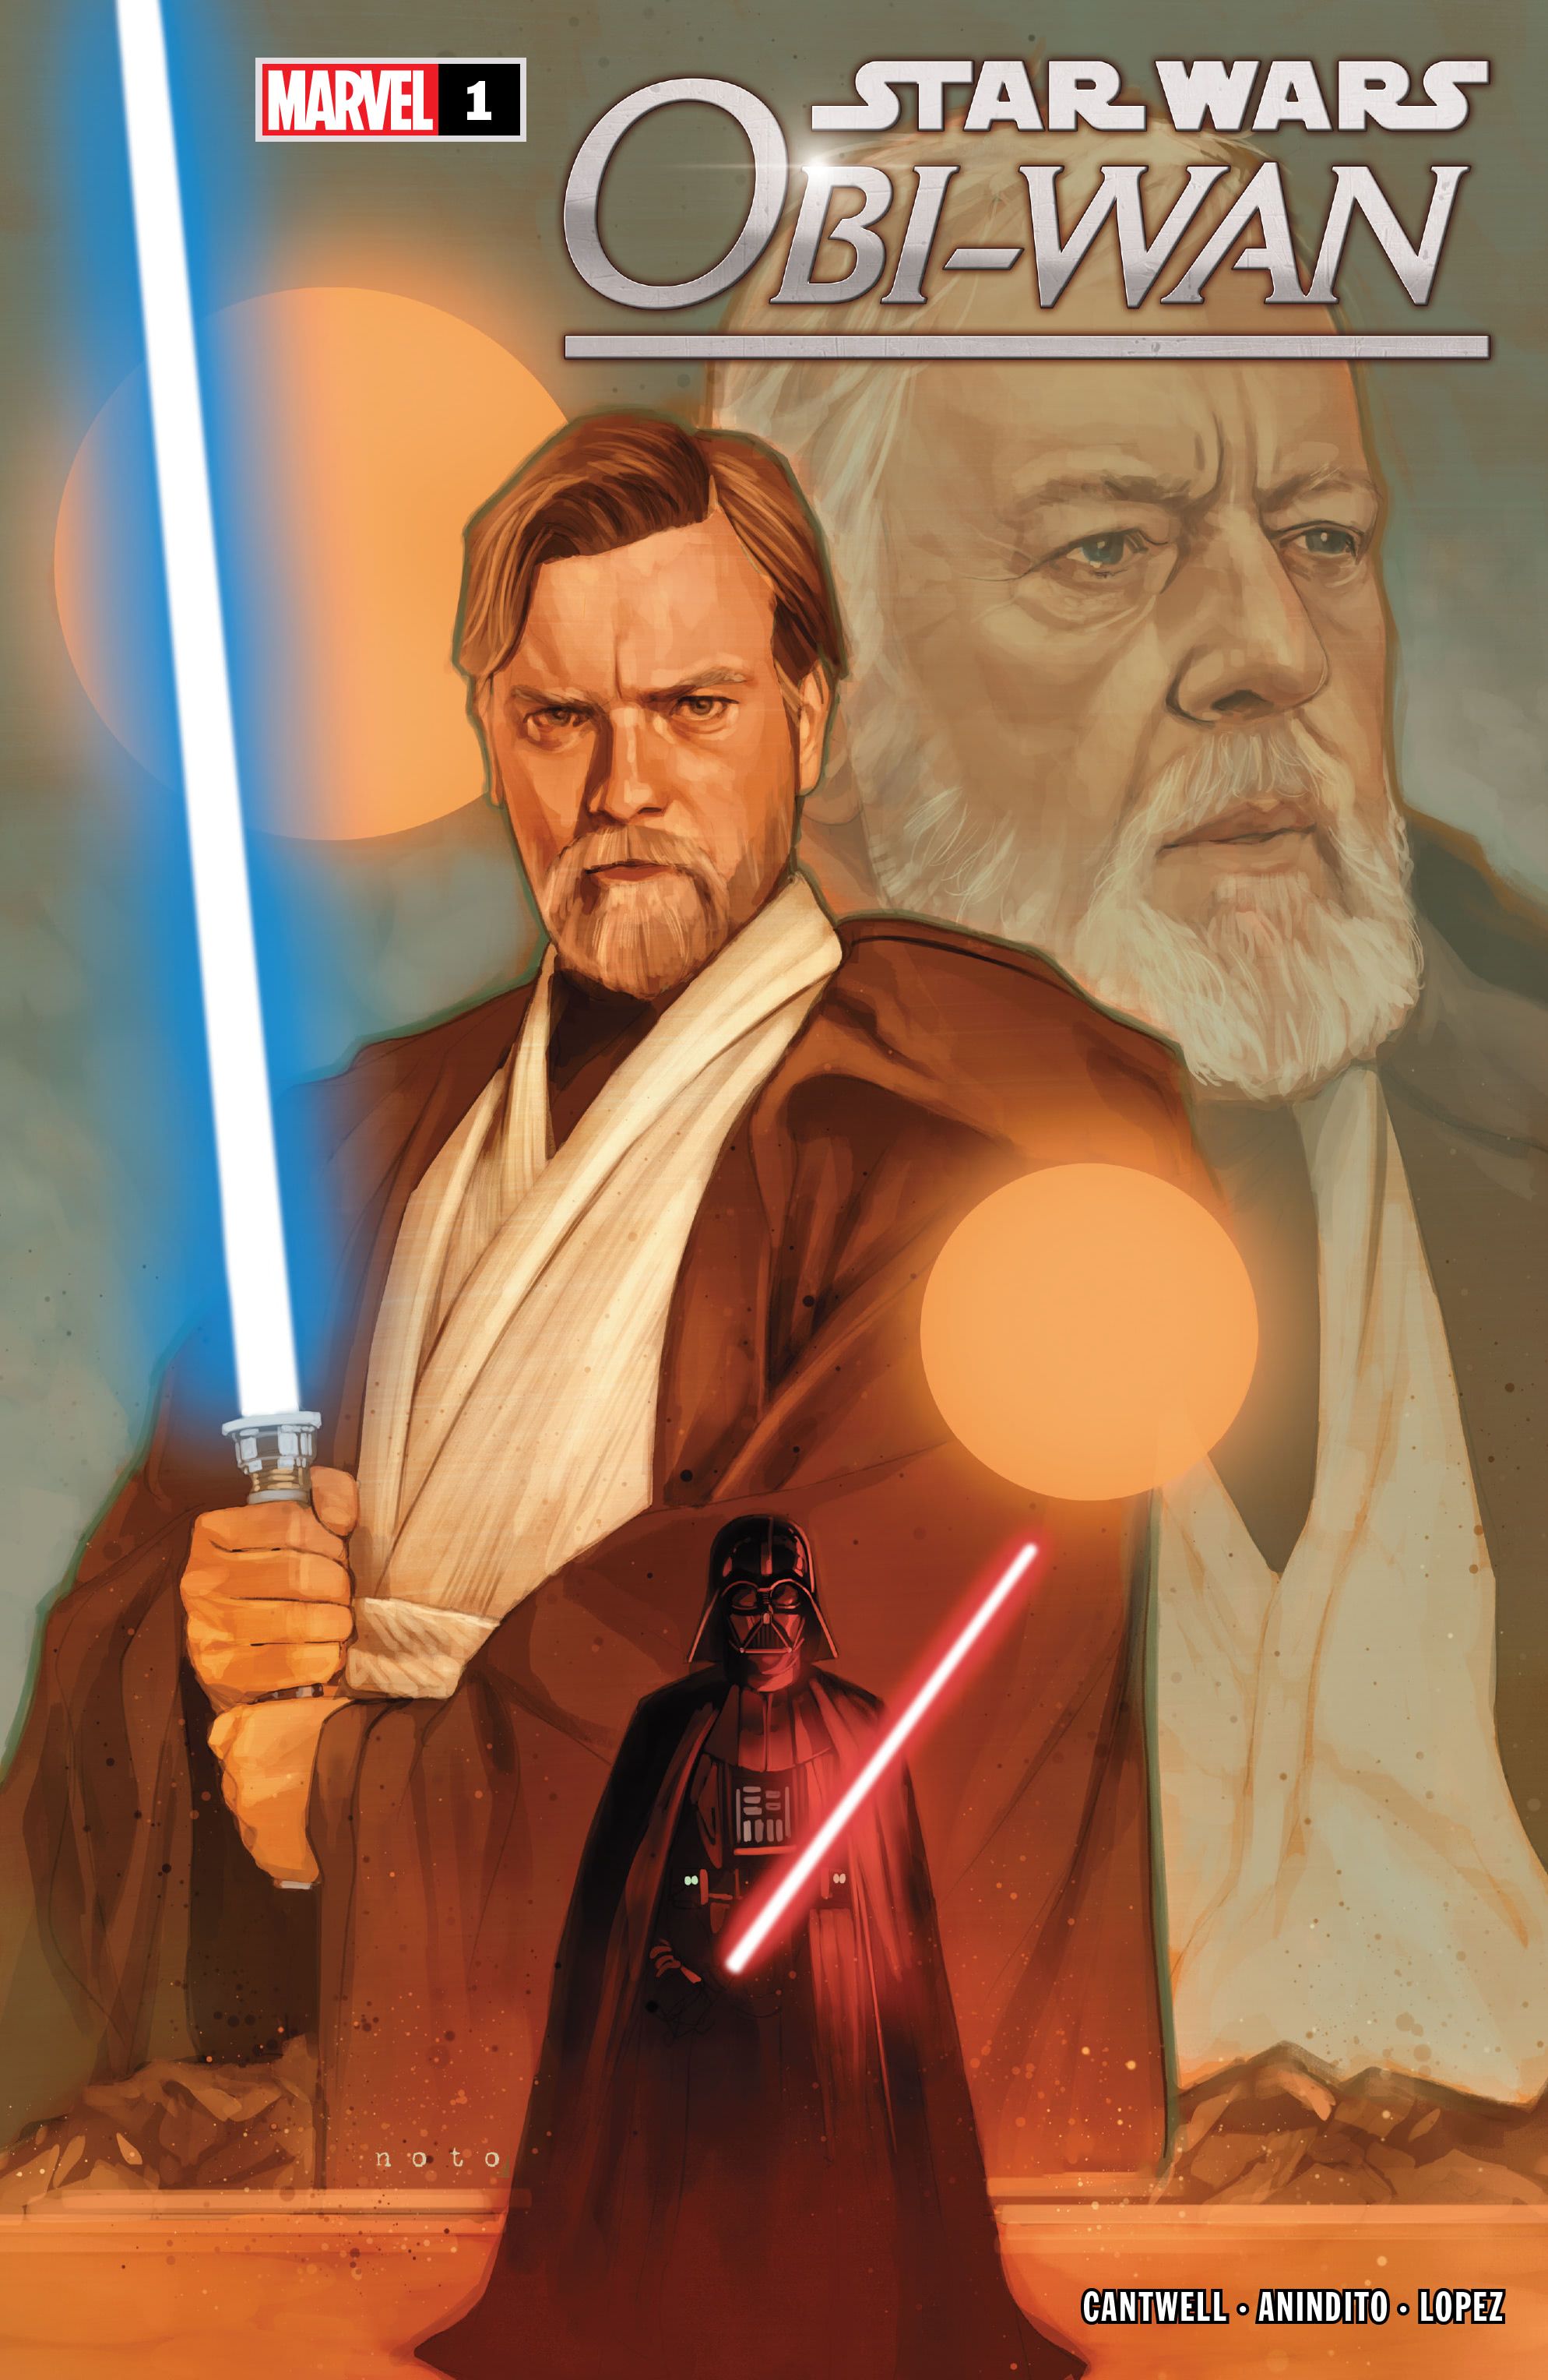 Marvel's Jedi Master Recounts the Old Days in Star Wars Obi-Wan Kenobi #1